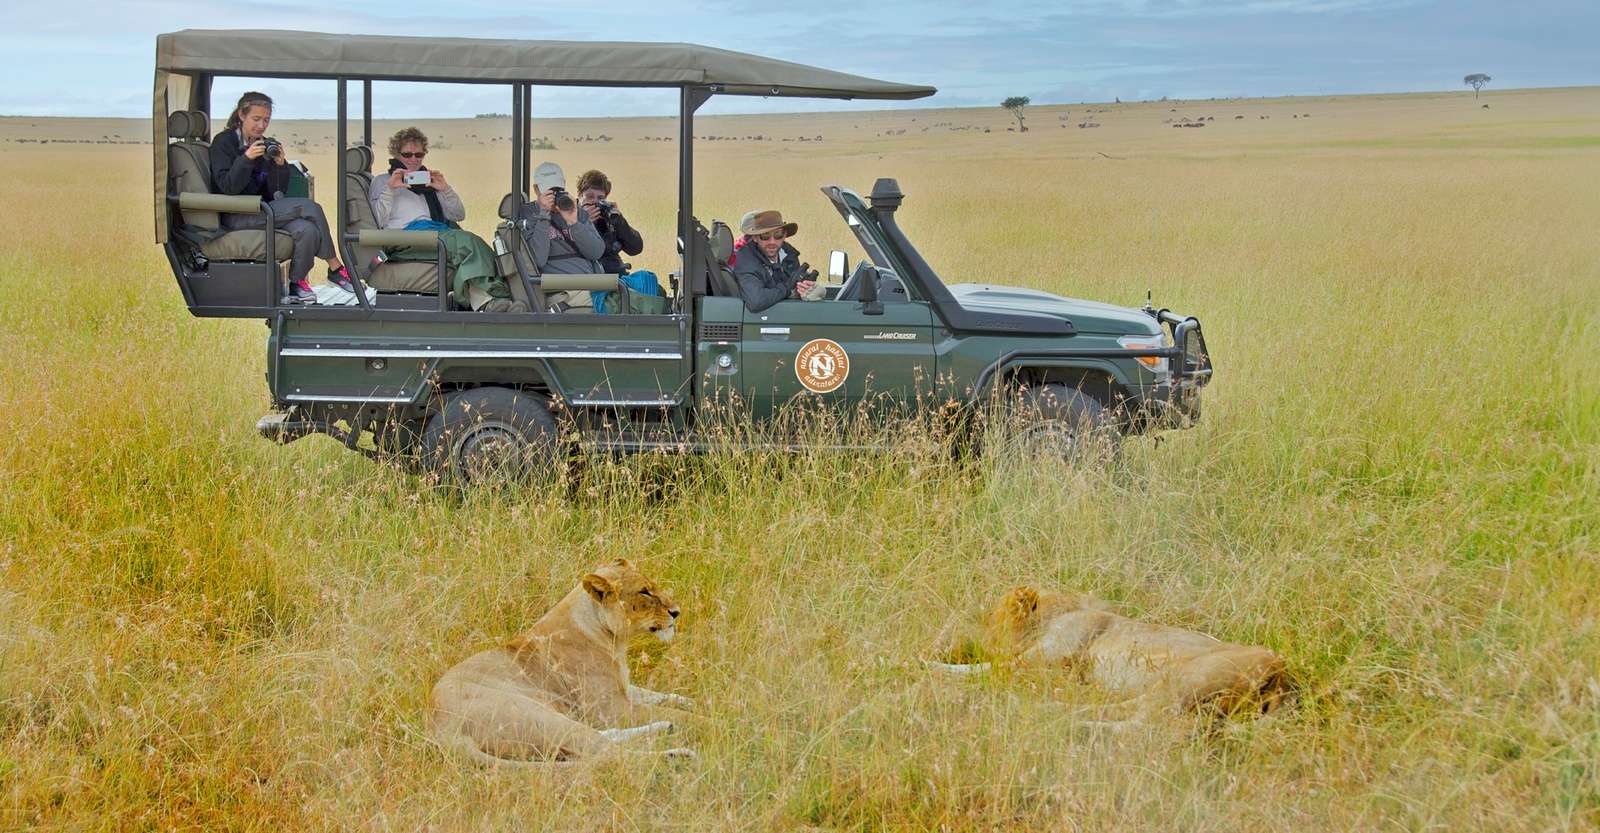 Lions and Nat Hab guests, Maasai Mara National Reserve, Kenya.